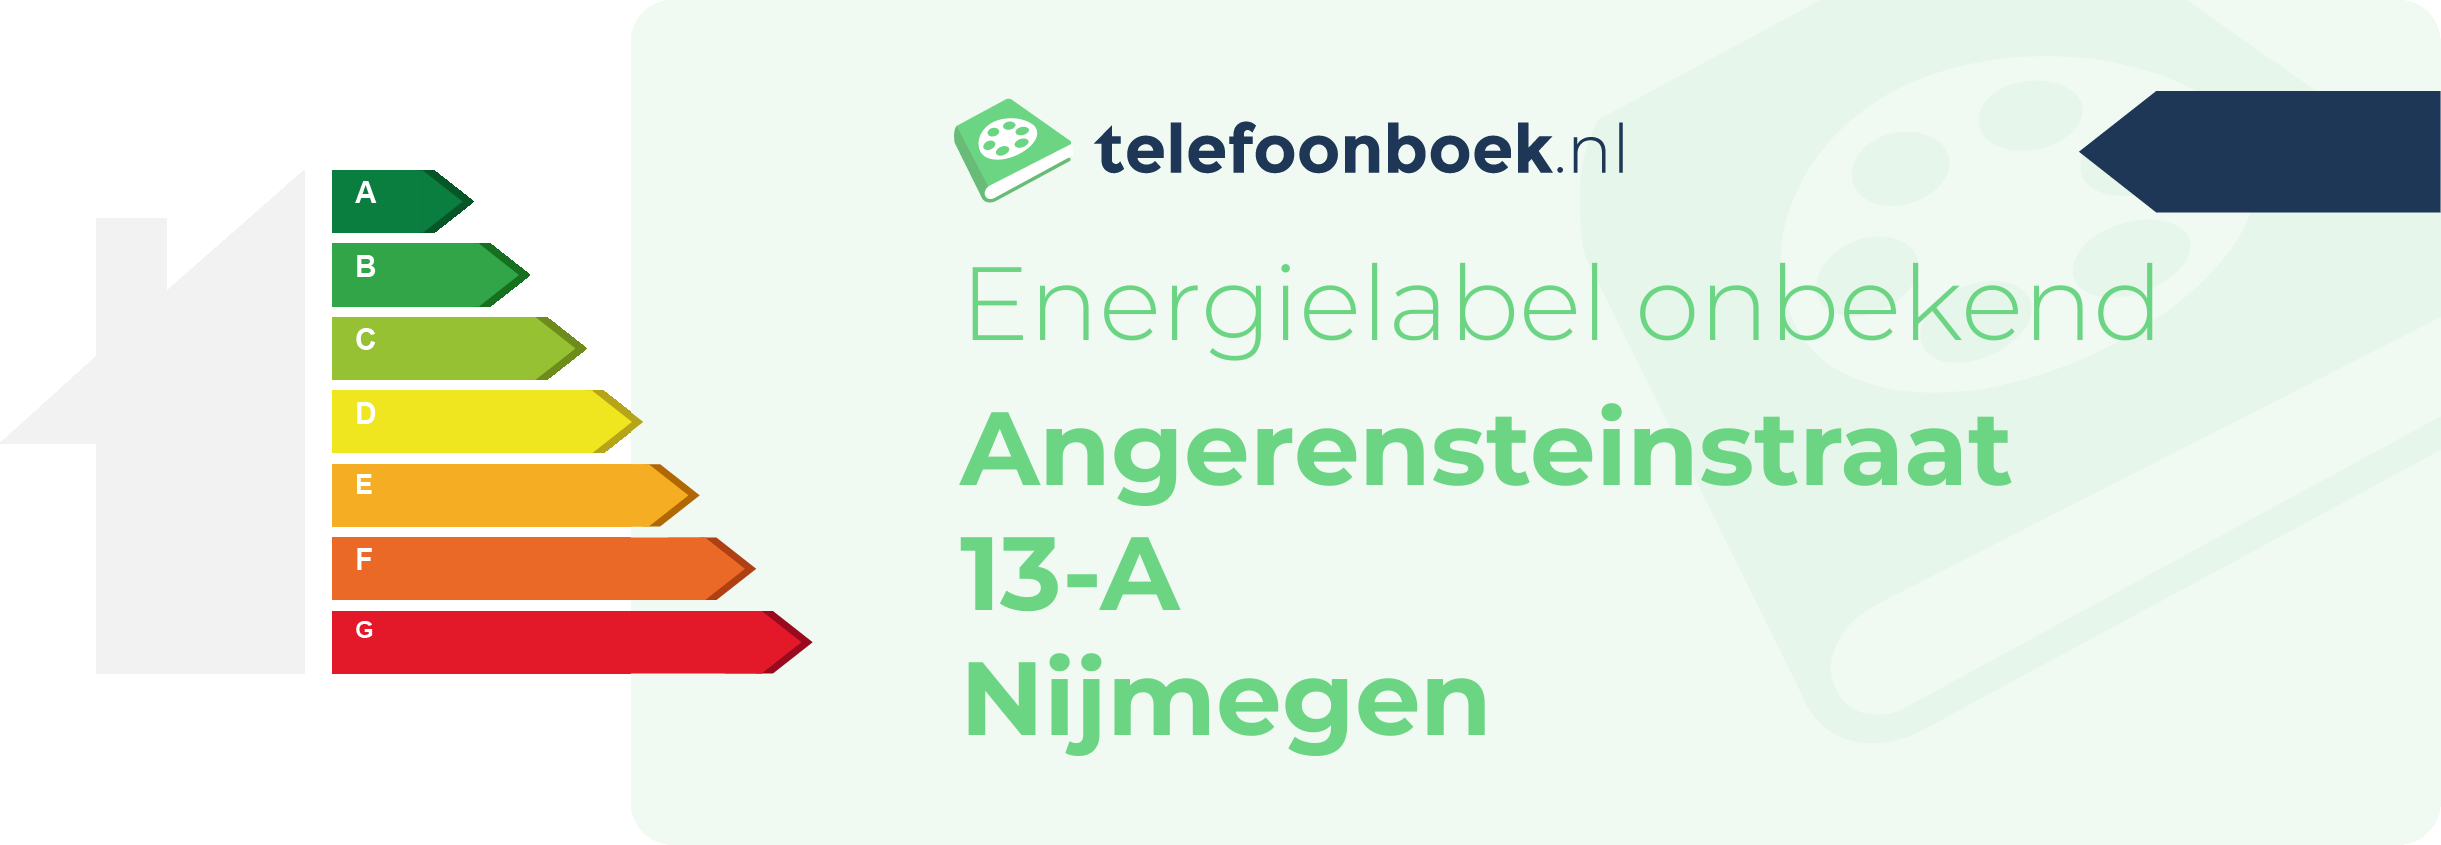 Energielabel Angerensteinstraat 13-A Nijmegen